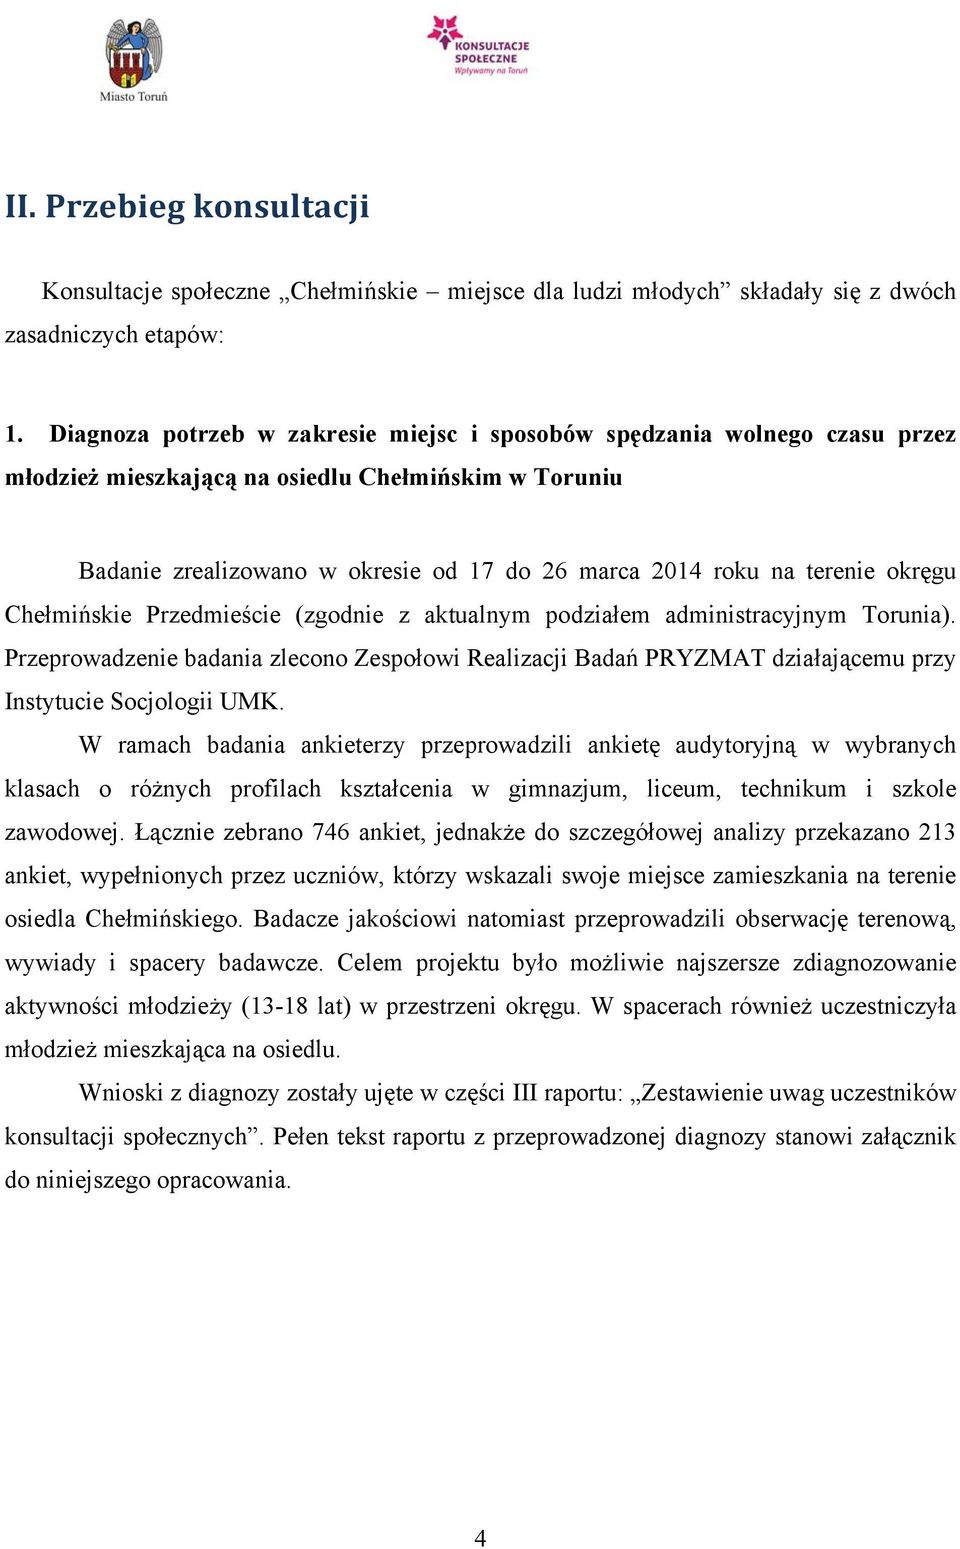 okręgu Chełmińskie Przedmieście (zgodnie z aktualnym podziałem administracyjnym Torunia).